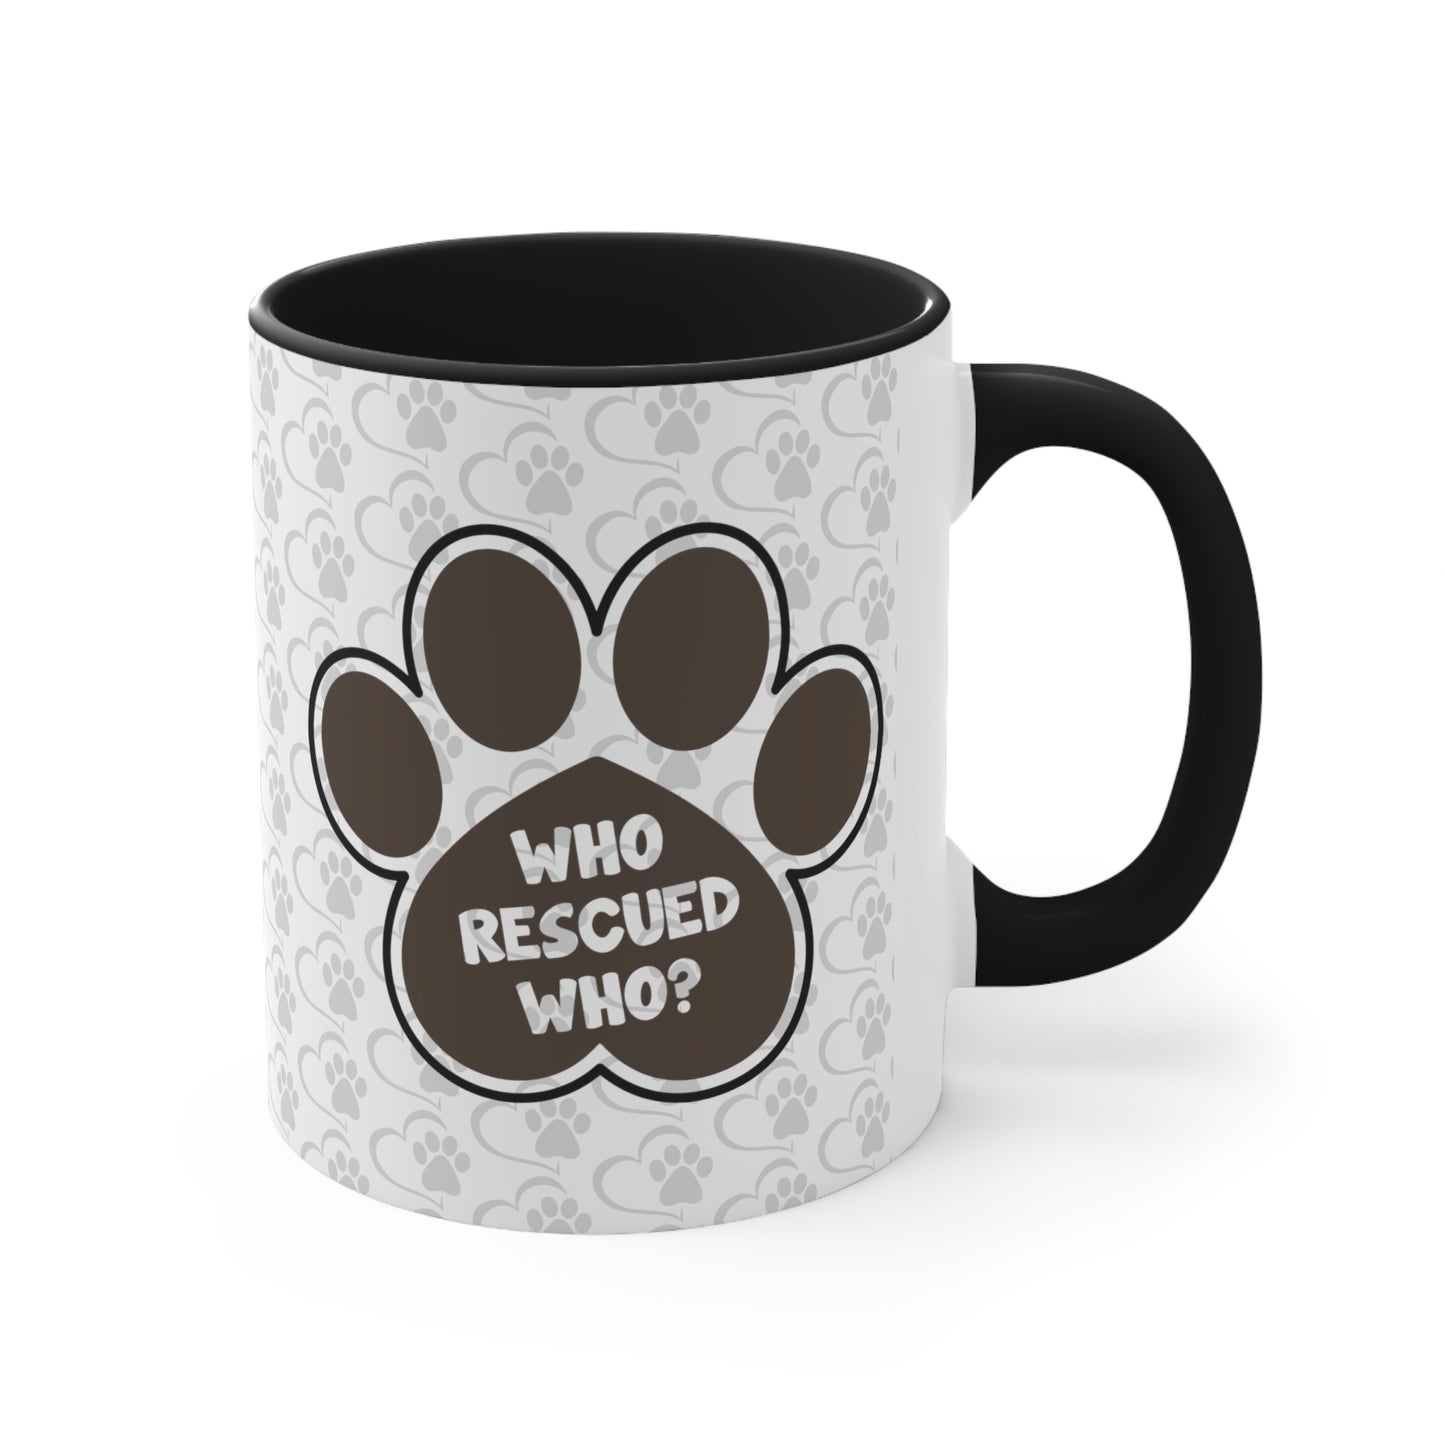 Who Rescued Who? Coffee Mug, 11oz